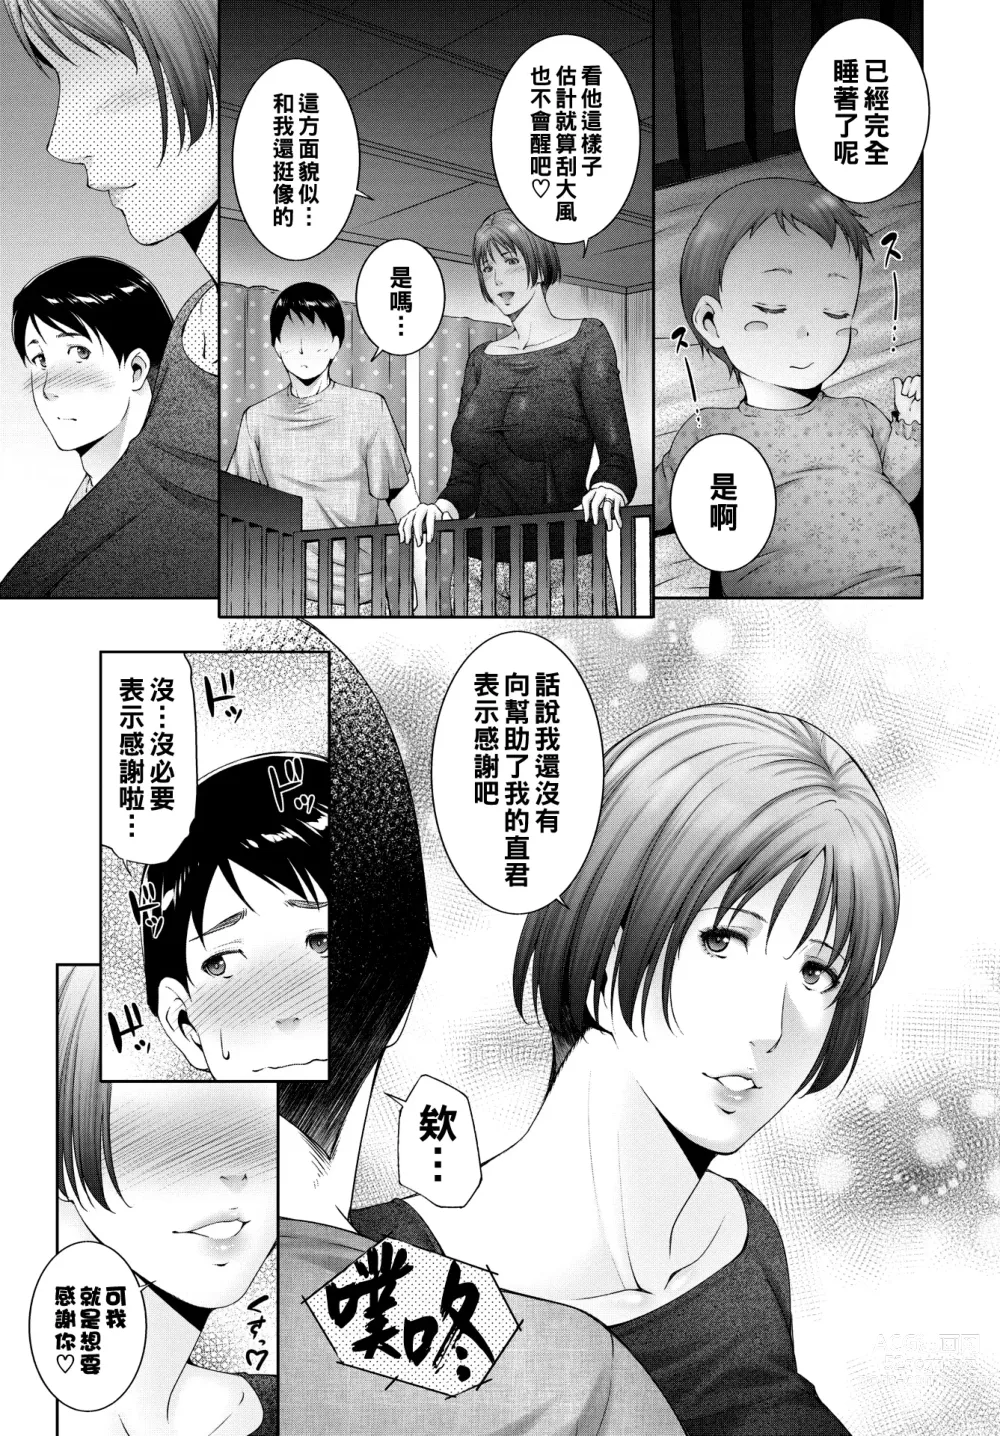 Page 7 of manga Milk o ageru - Give milk